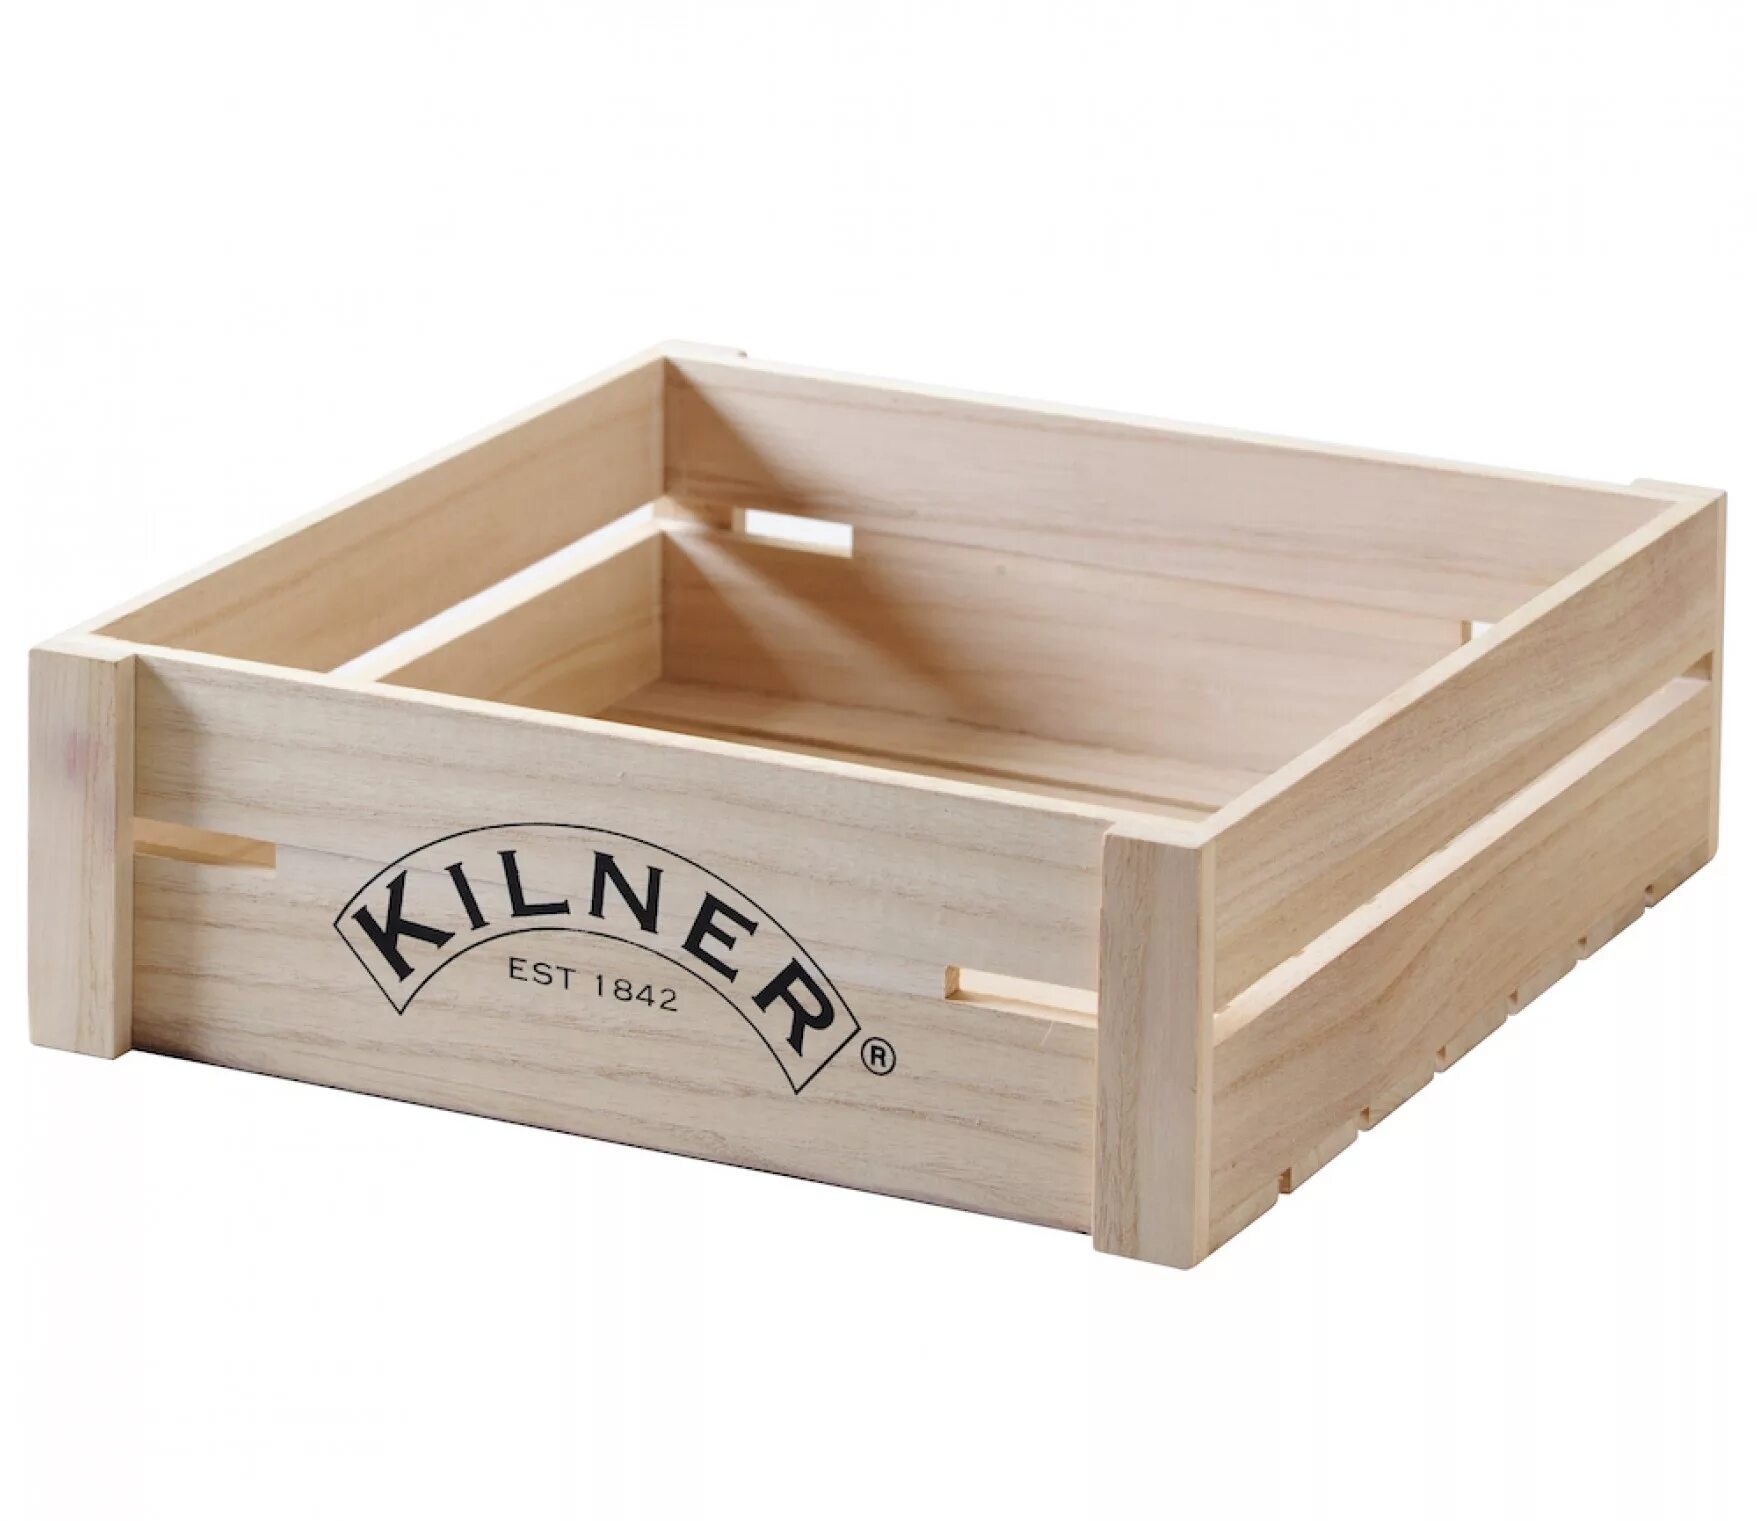 Купить ящики в перми. Ящик Wooden Crate. Ящики для фруктов деревянные. Ящик для хранения деревянный декоративный. Ящик для овощей деревянный.